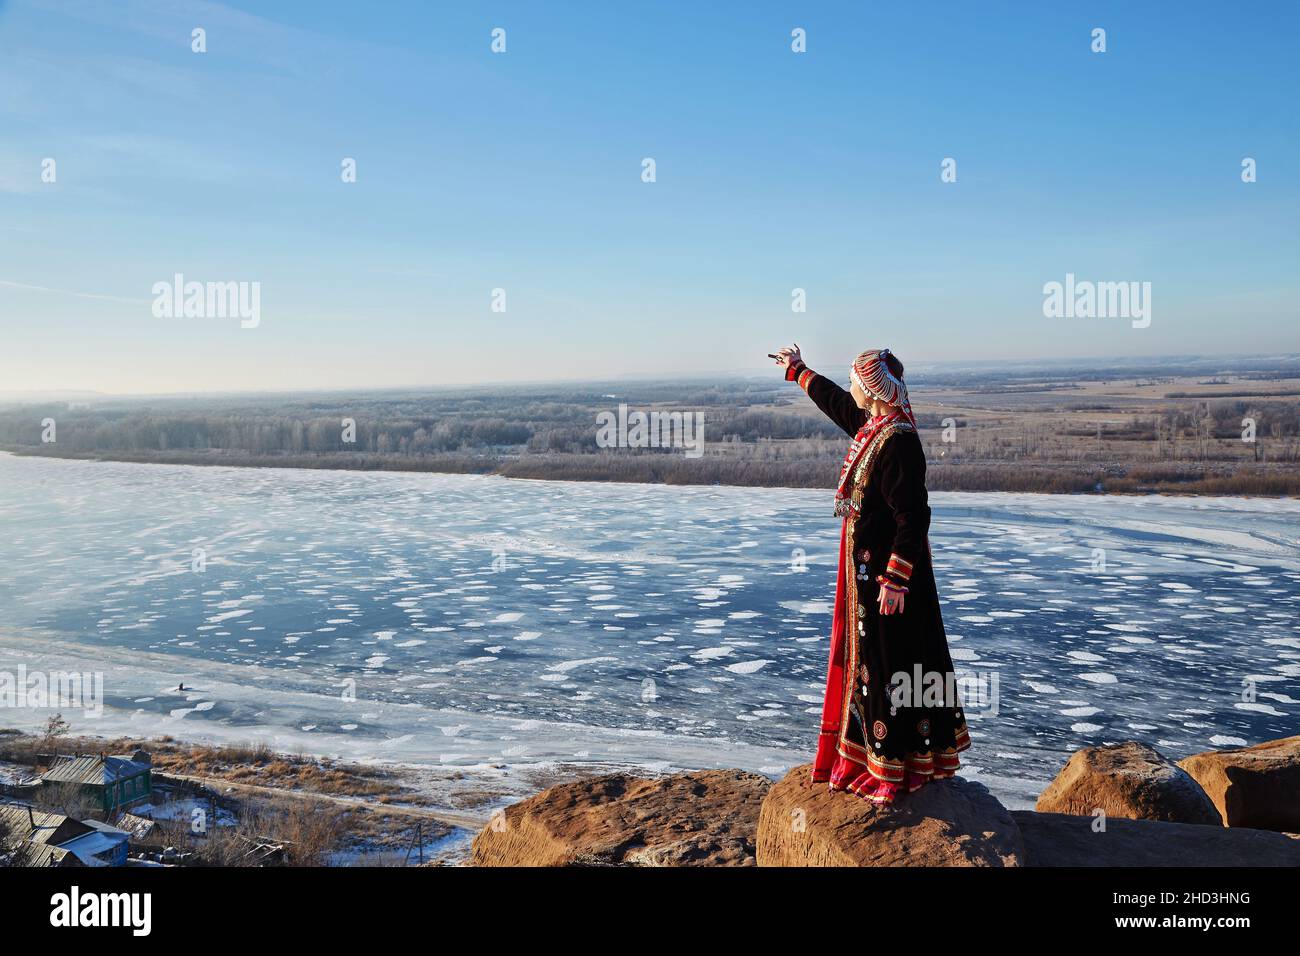 Seitenansicht einer Frau in authentischem Kostüm, die den Arm zum gefrorenen Fluss streckt, während sie an einem wolkenlosen Tag auf dem Land in der Nähe des Dorfes auf Steinen steht Stockfoto